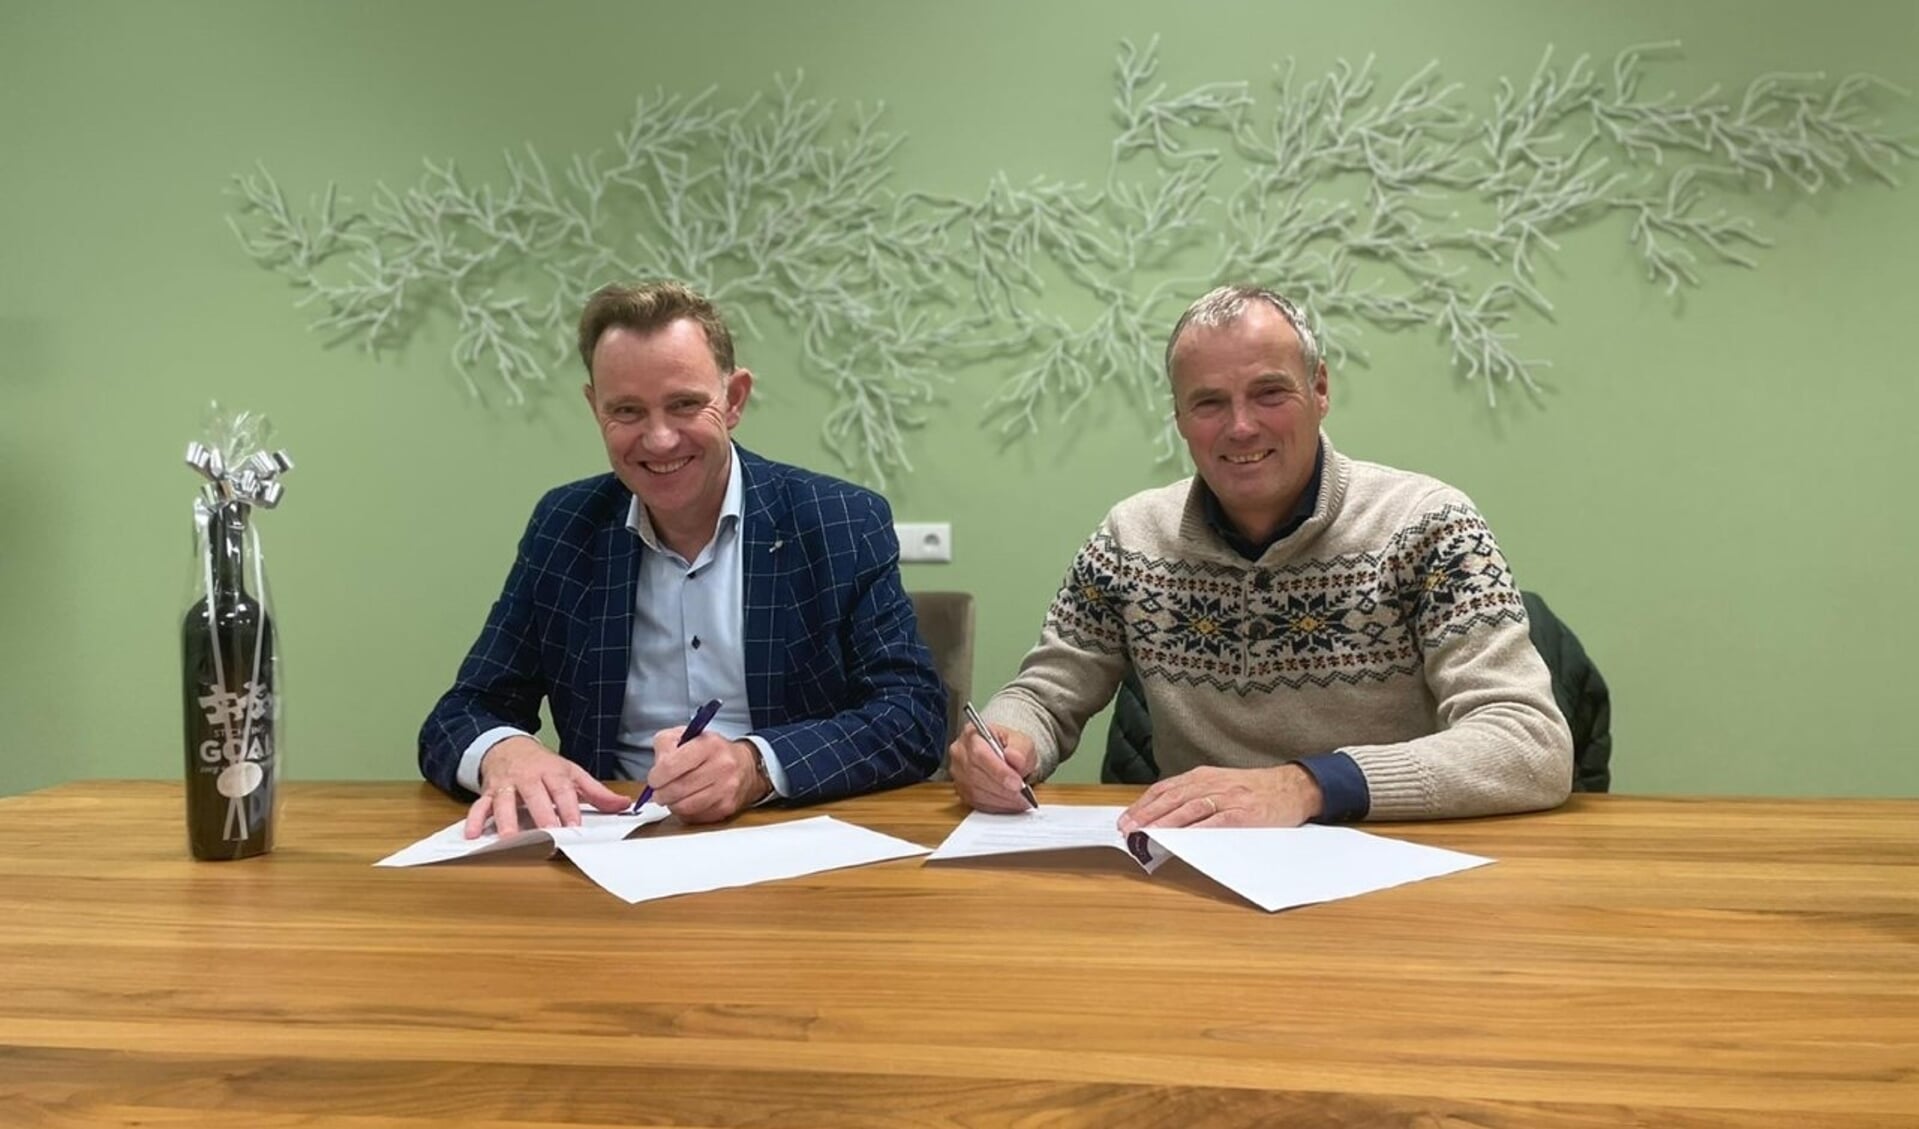 De ondertekening van de overeenkomst door Jan Pieter Maas (Livio) en Vincent Schreur (r) van Stichting GOAL. Foto: PR